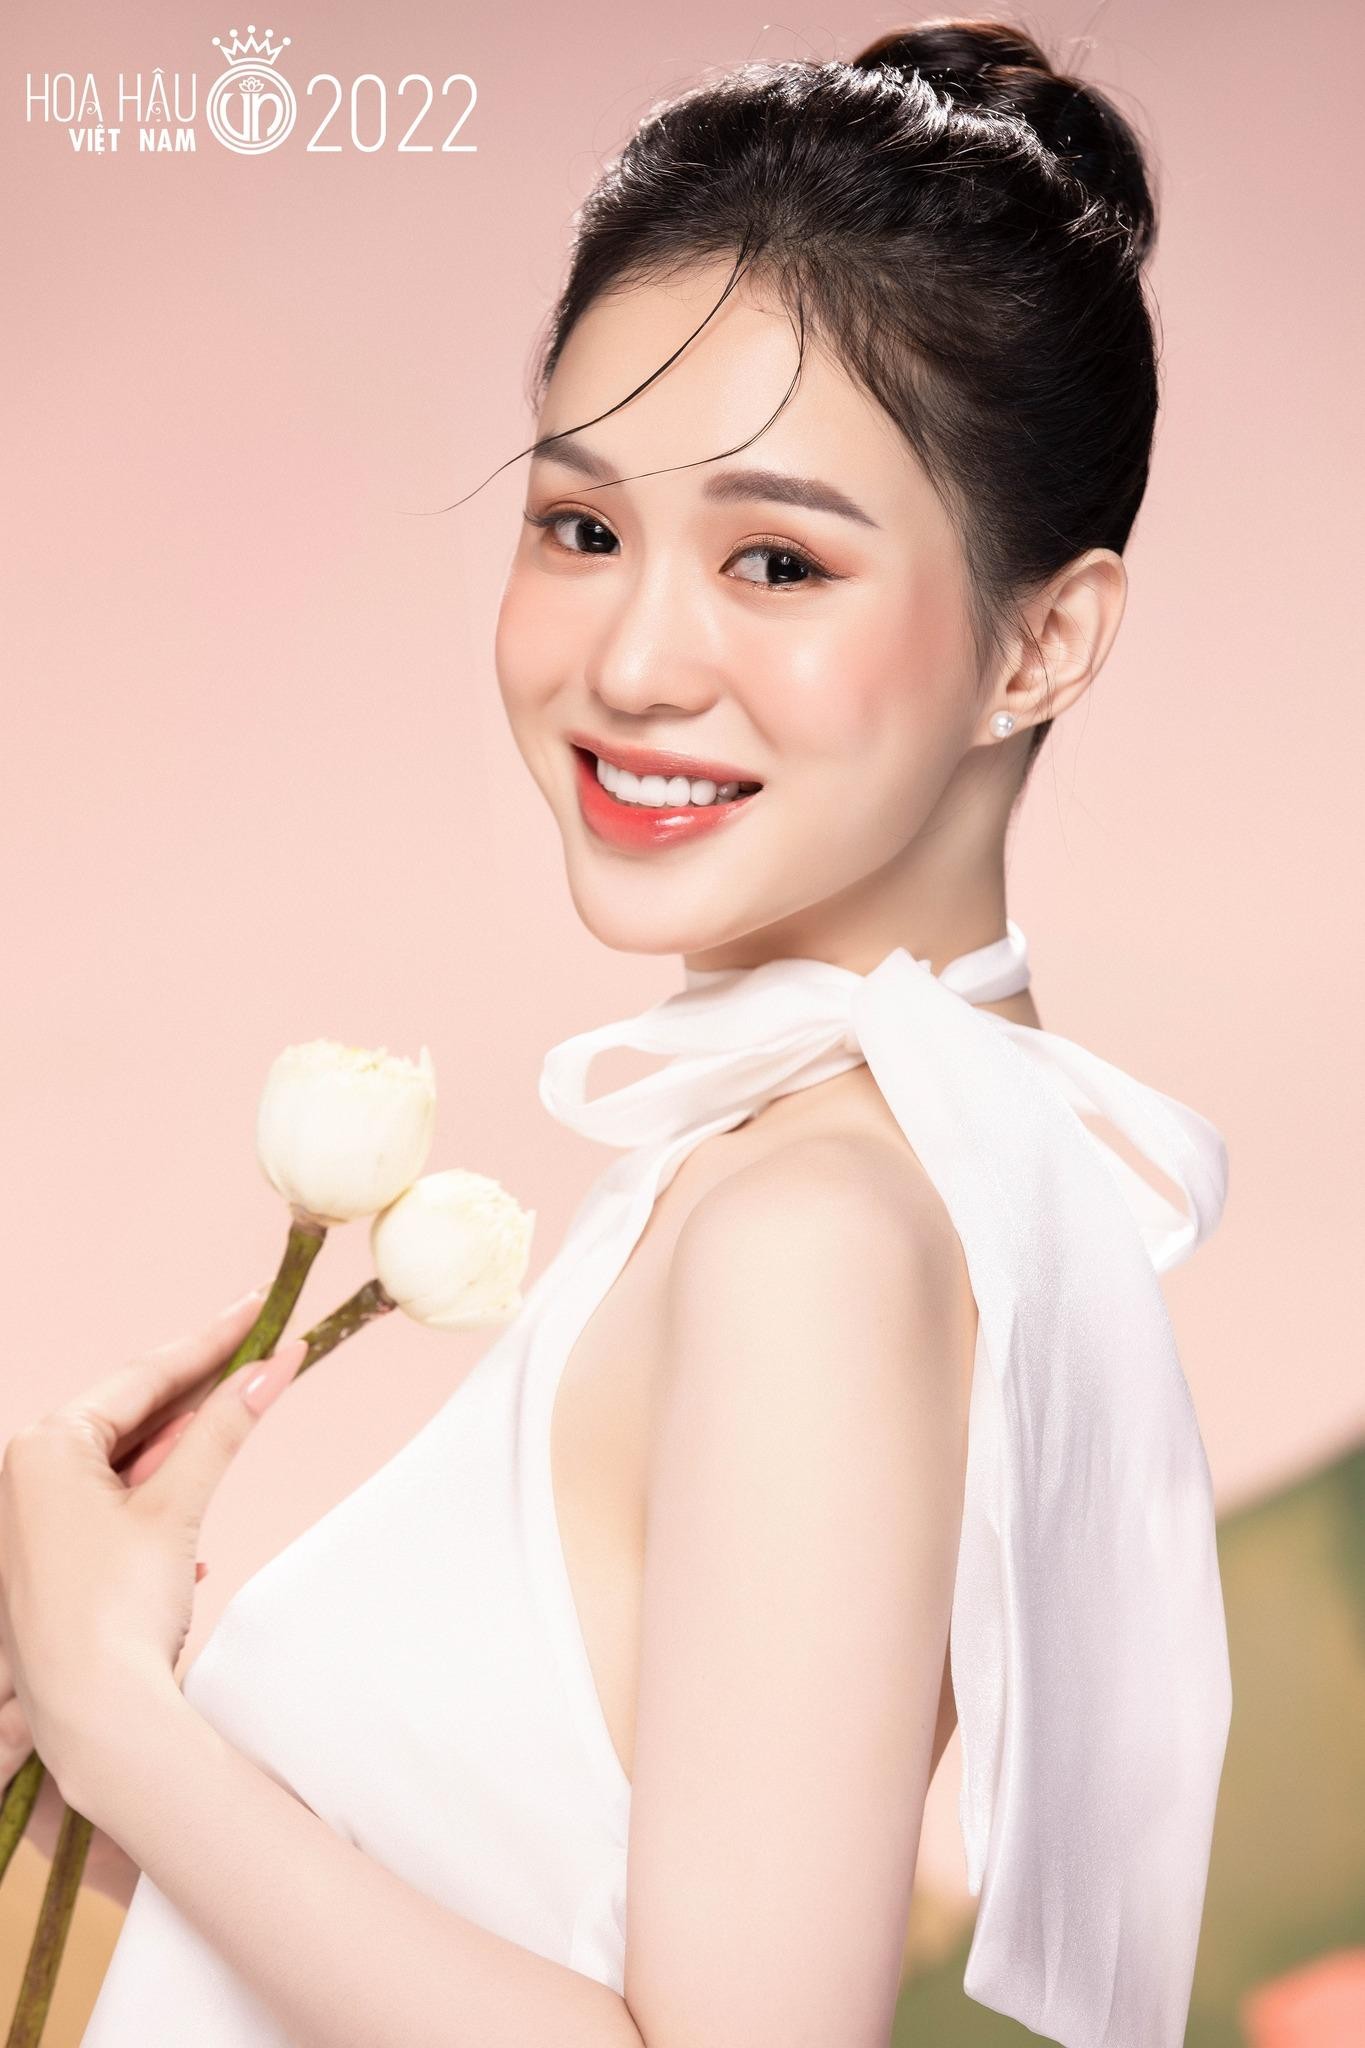 Nhan sắc cận của thí sinh Hoa hậu Việt Nam 2022 - Ảnh 8.